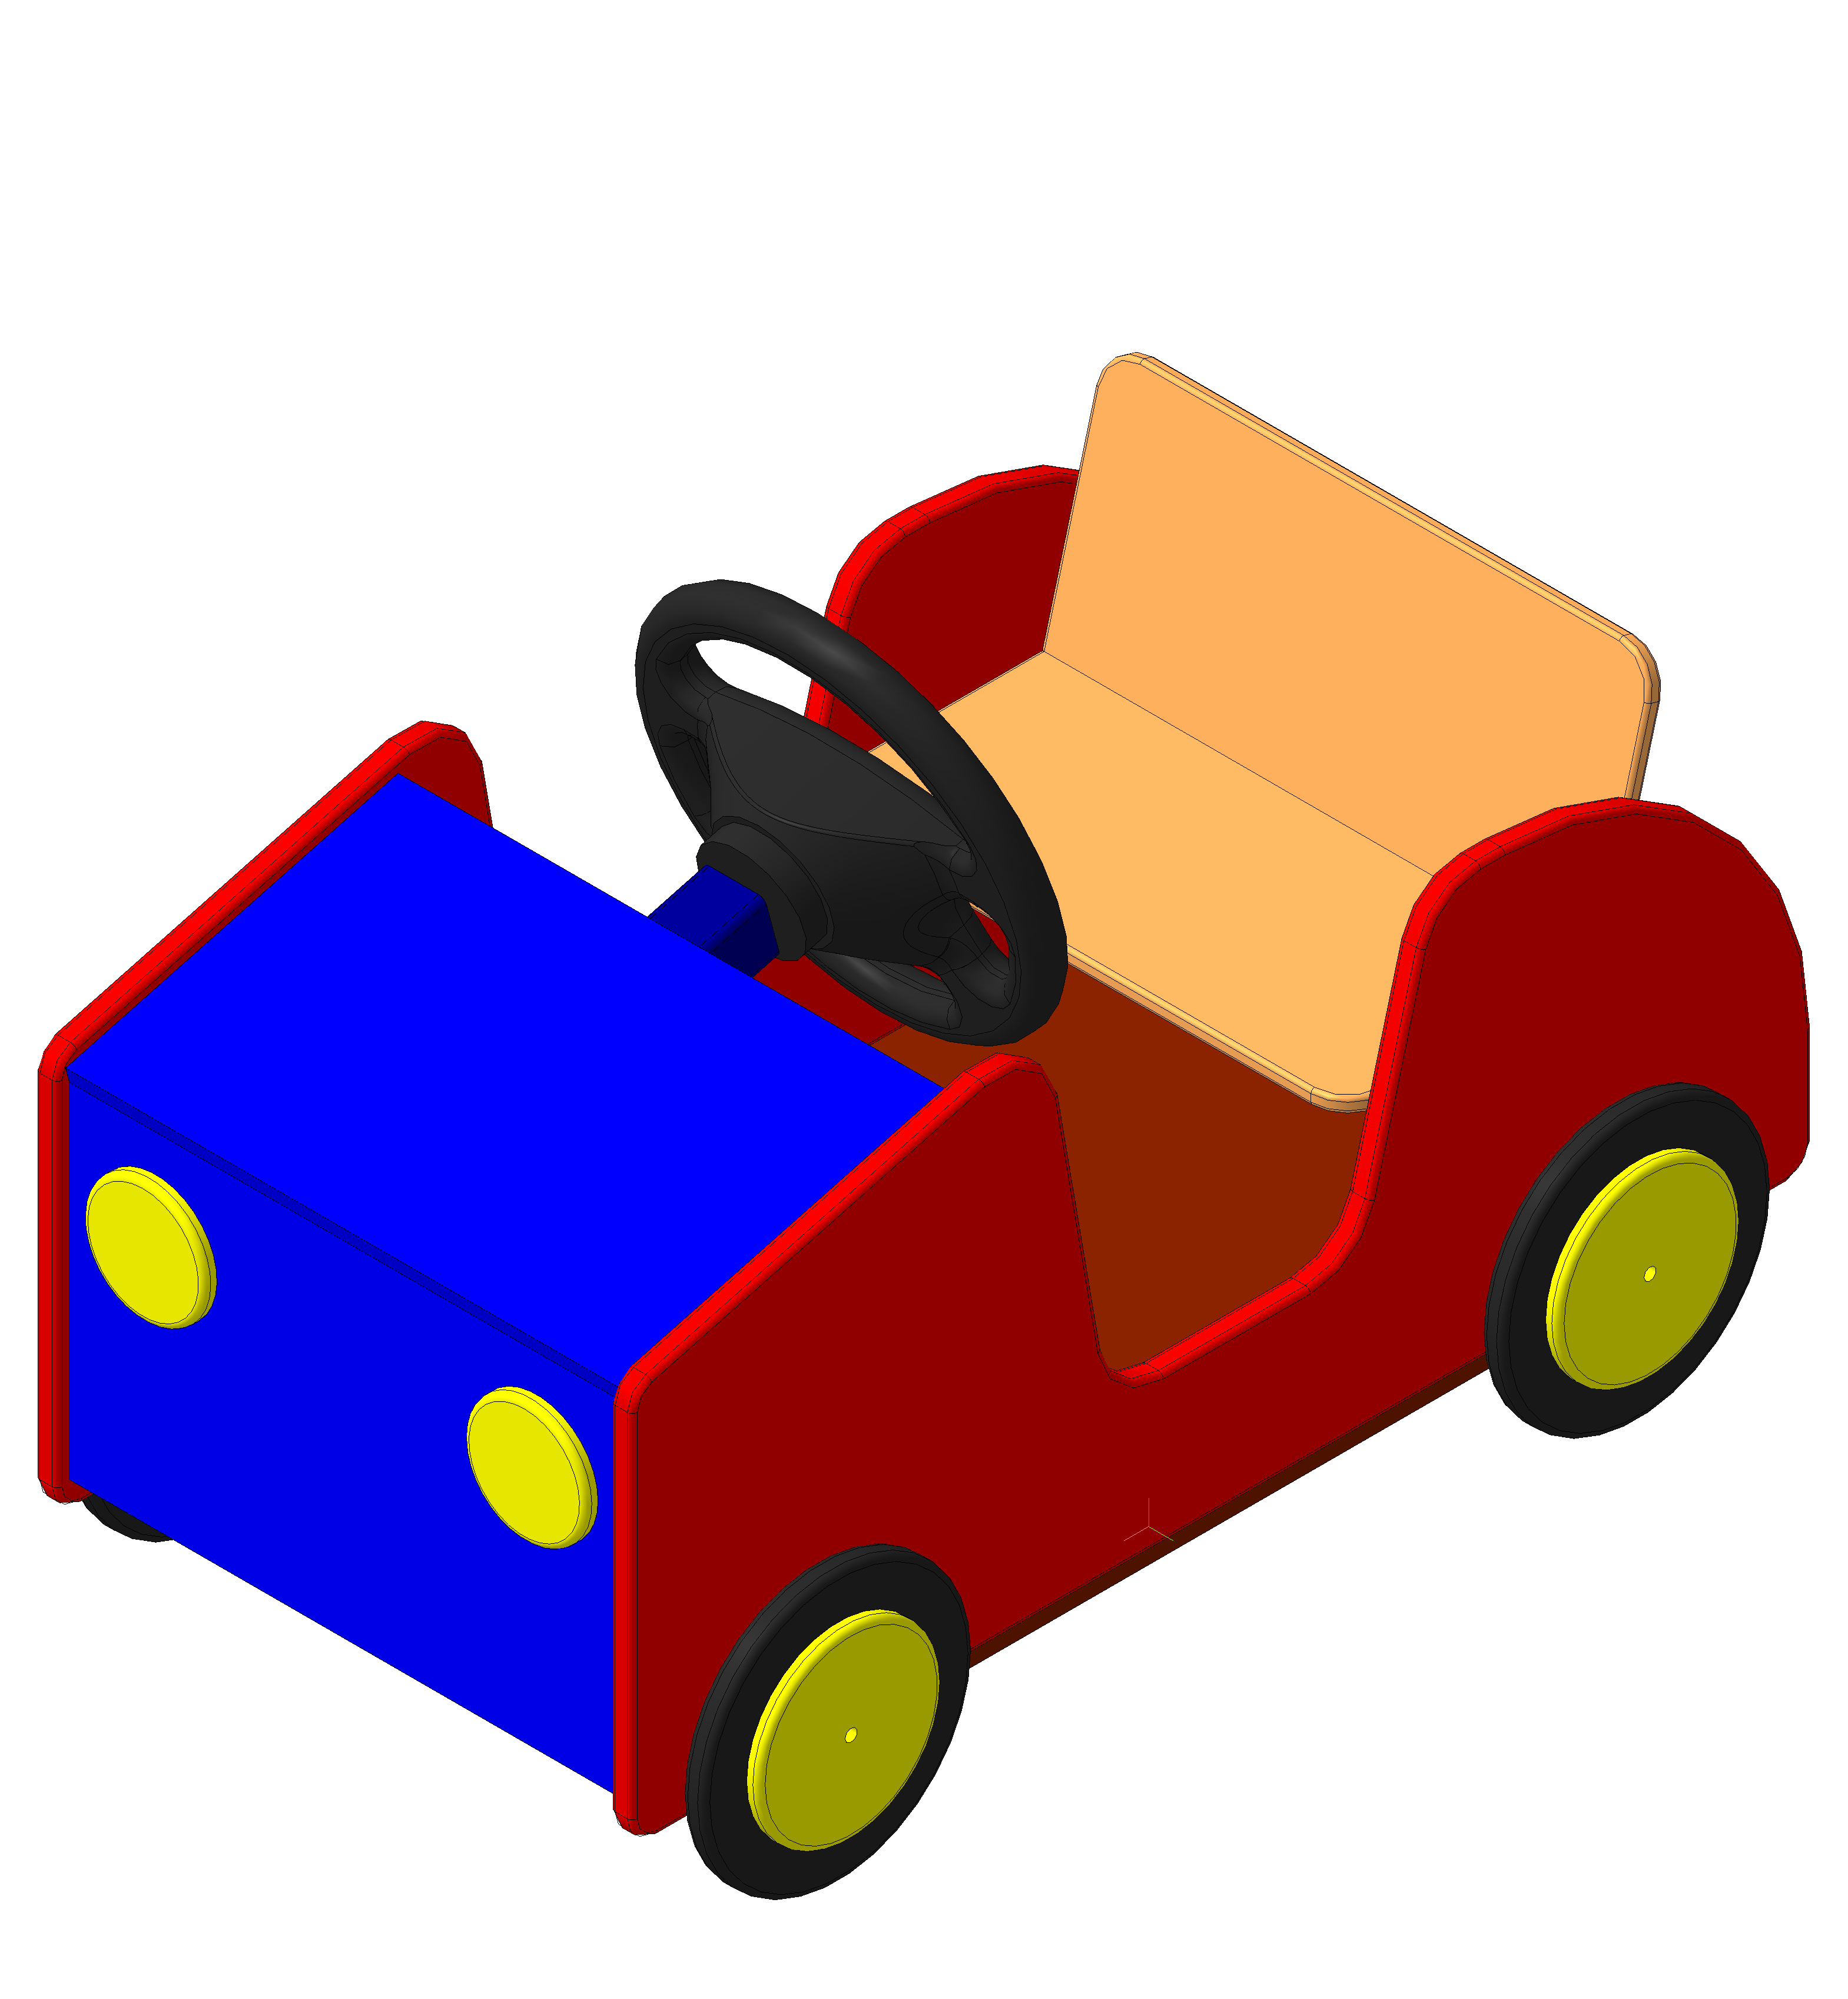 Машина дол. Машинка в детский сад на площадку. Машинка для детской площадки. Машинка уличная для детского сада. Машинка деревянная в детский сад.